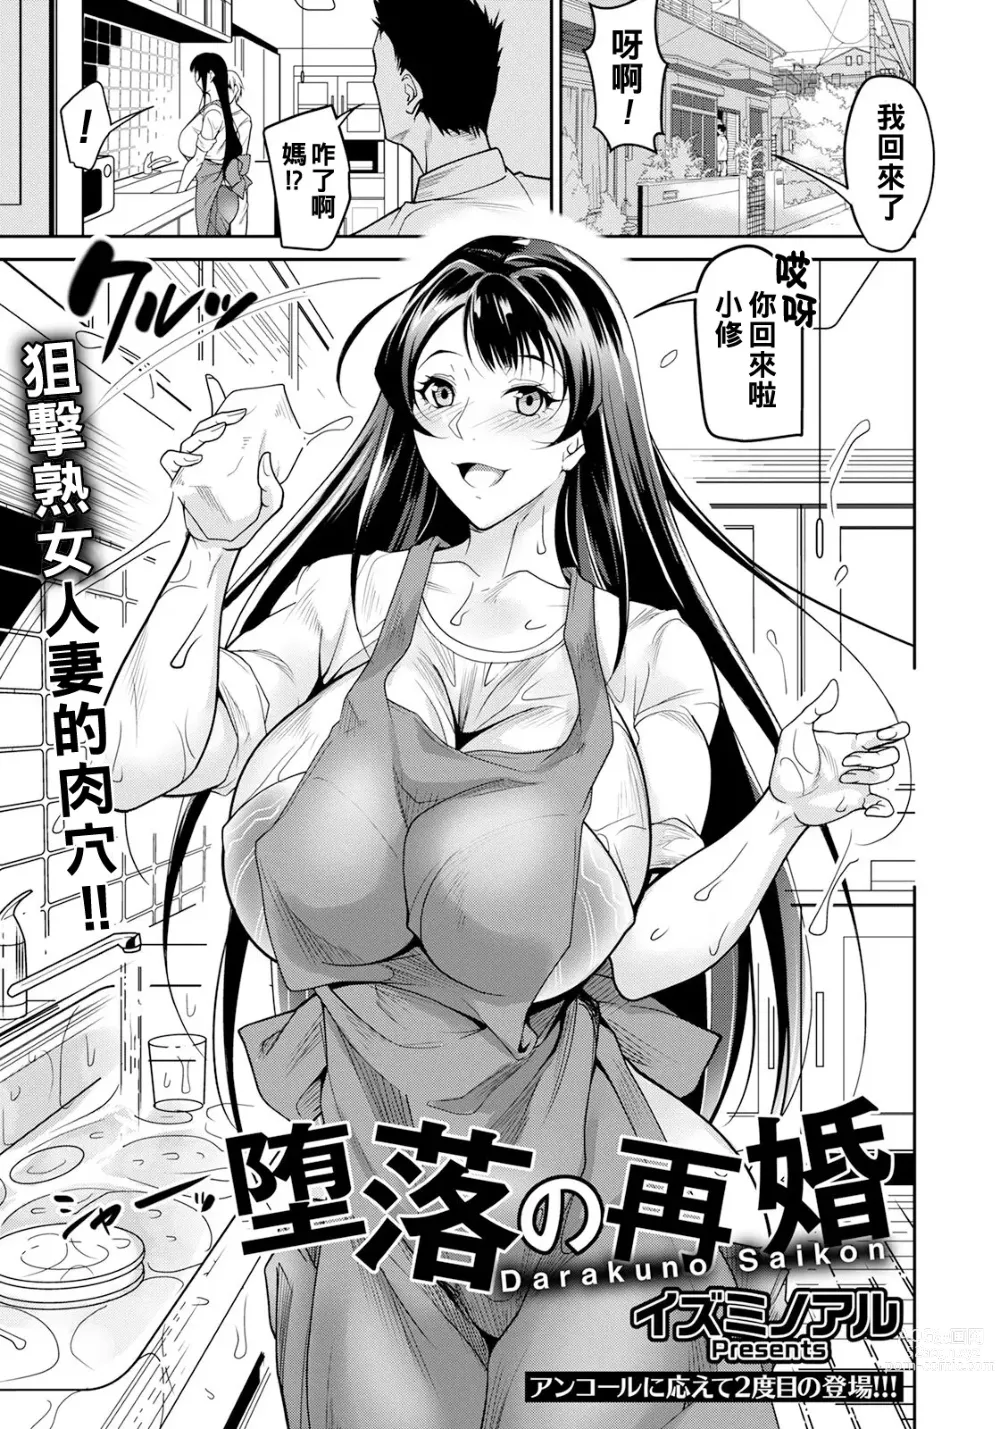 Page 1 of manga Daraku no Saikon